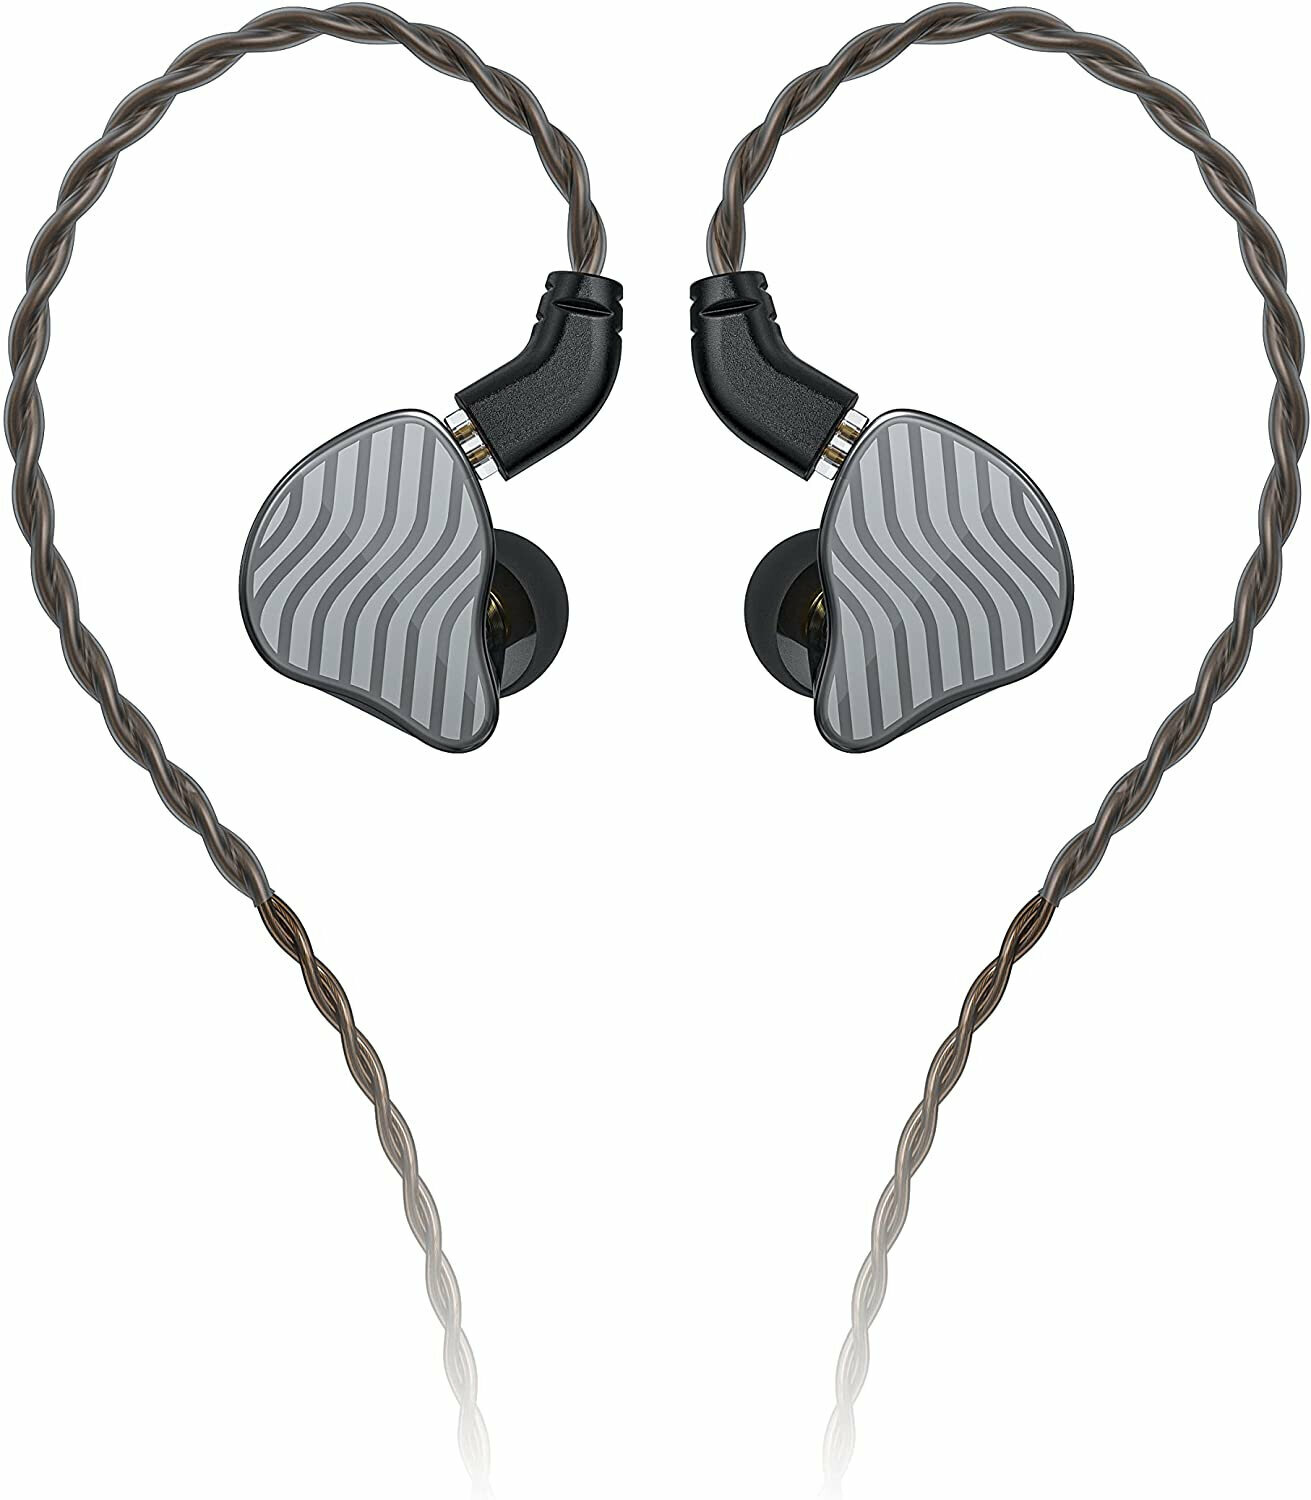 Ohrbügel-Kopfhörer FiiO JH3